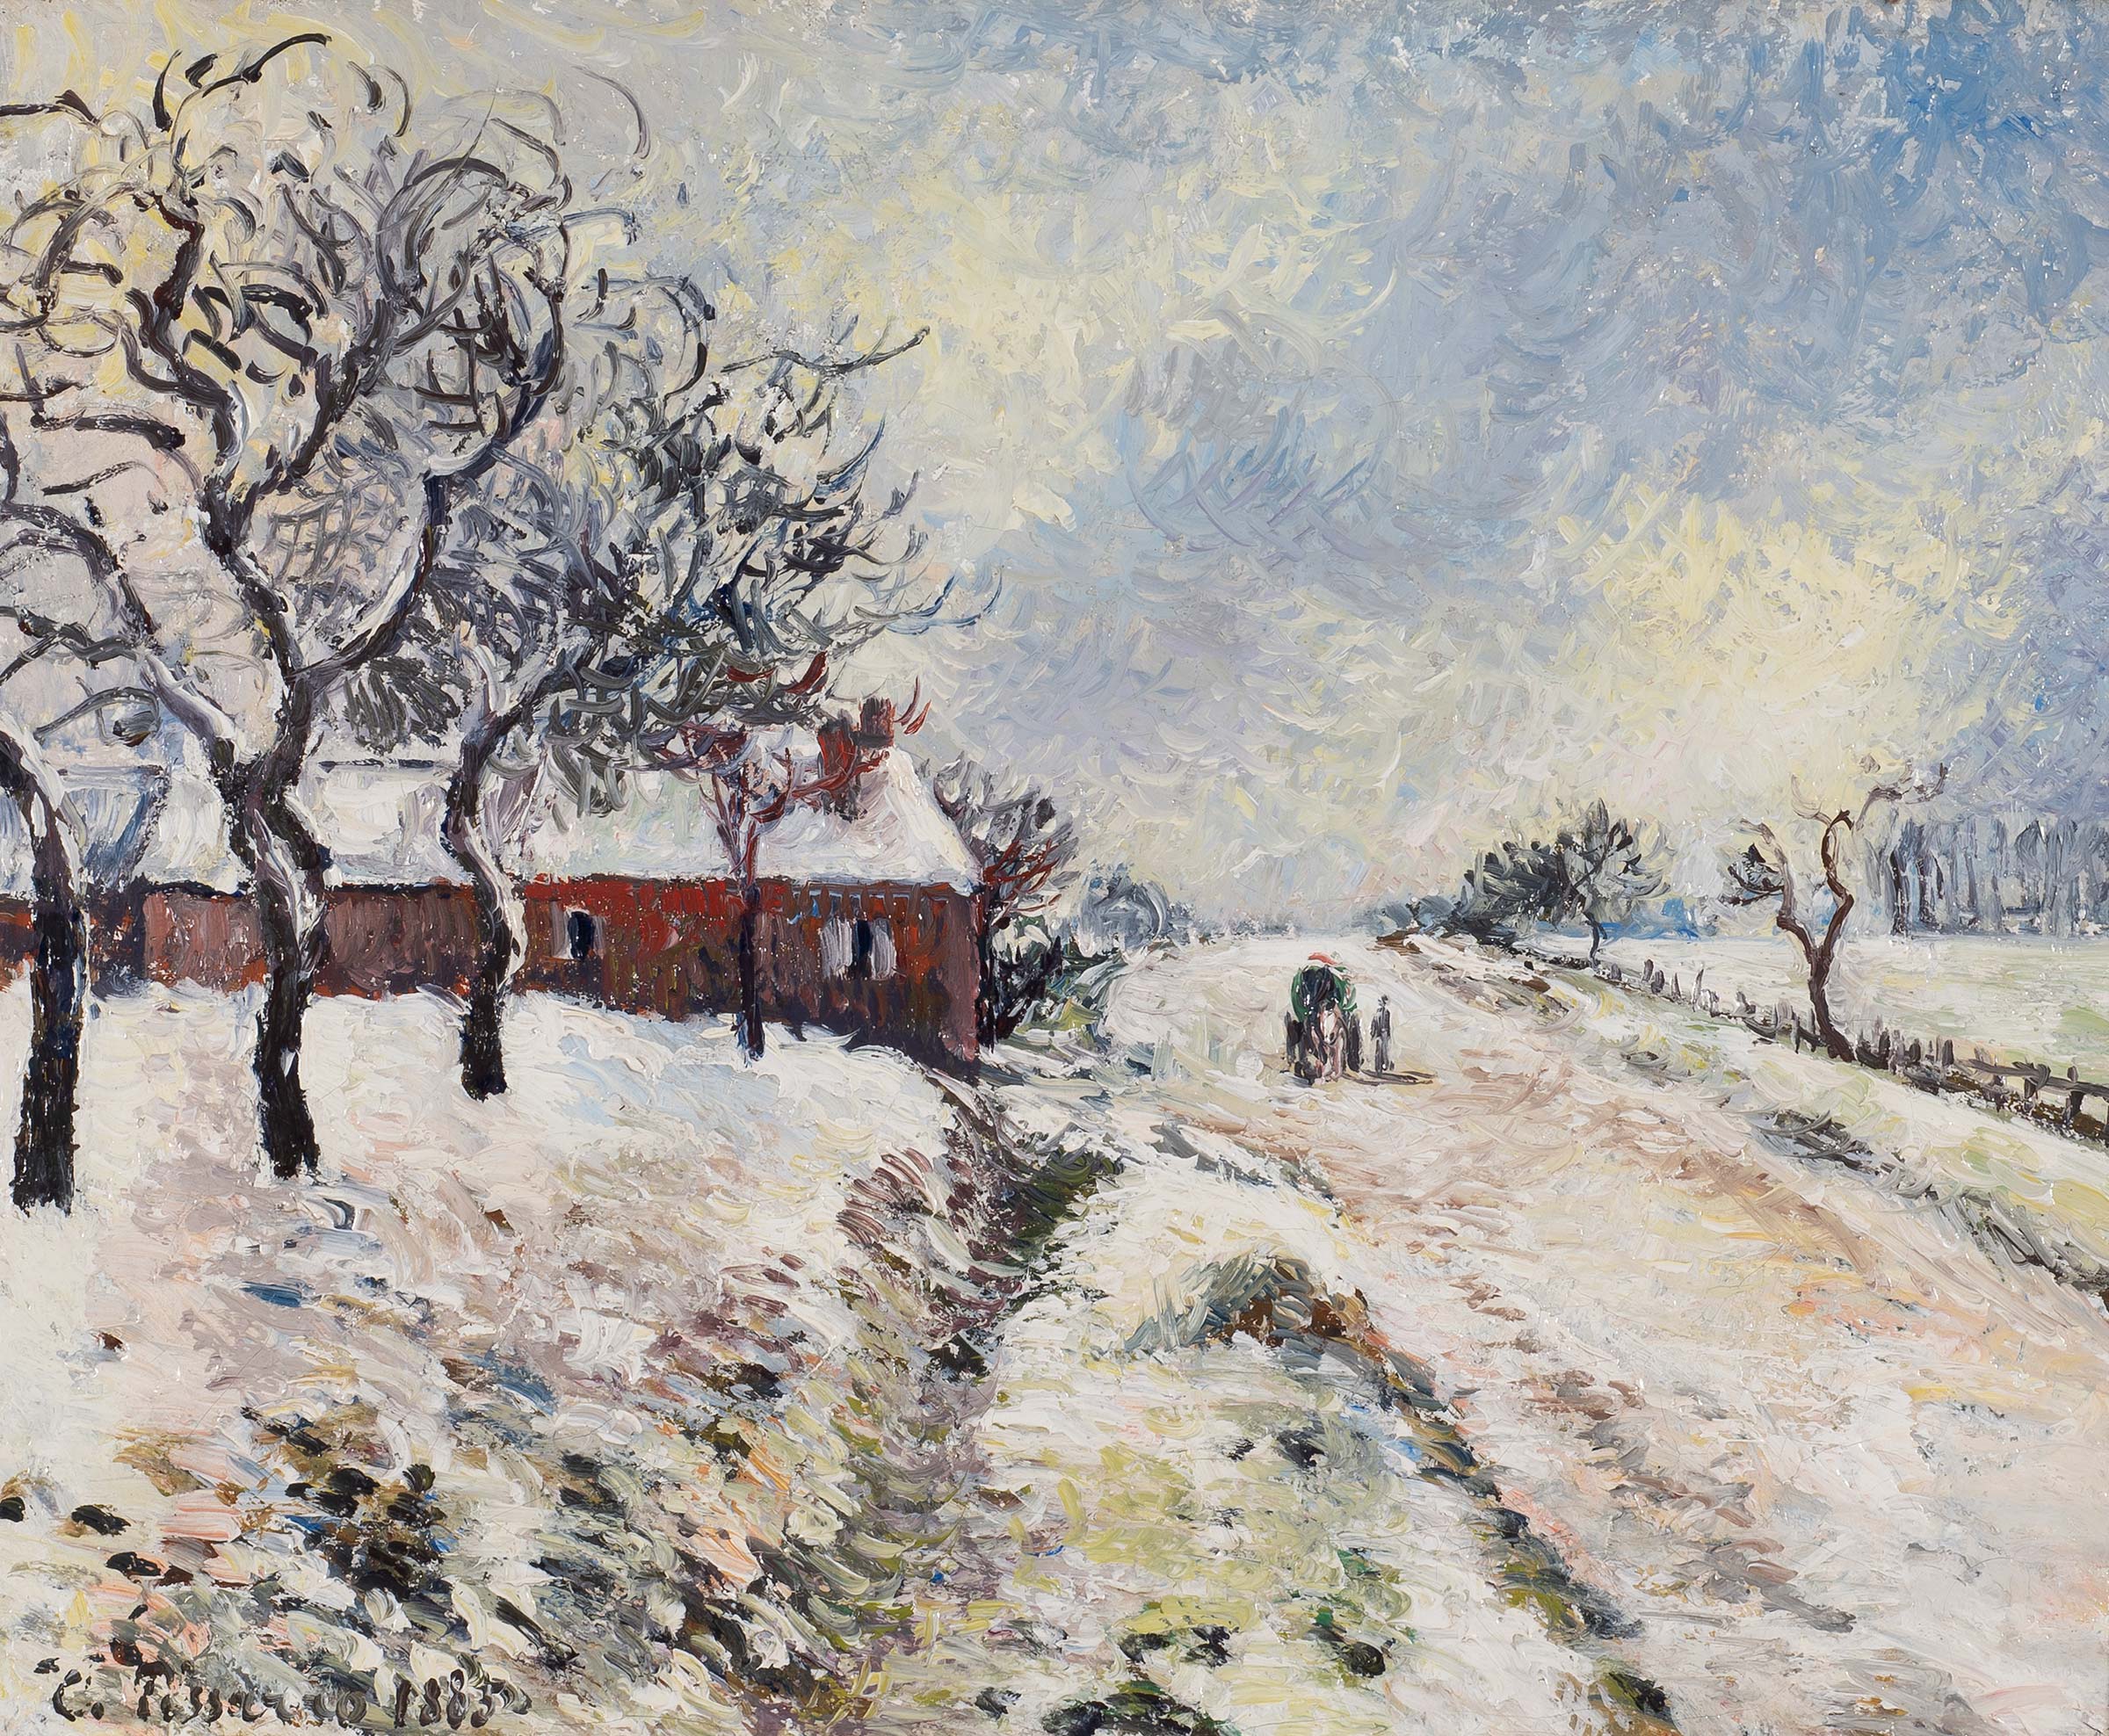 Camille Pissarro, 'Route Enneigée avec Maison.' Image courtesy M.S. Rau.